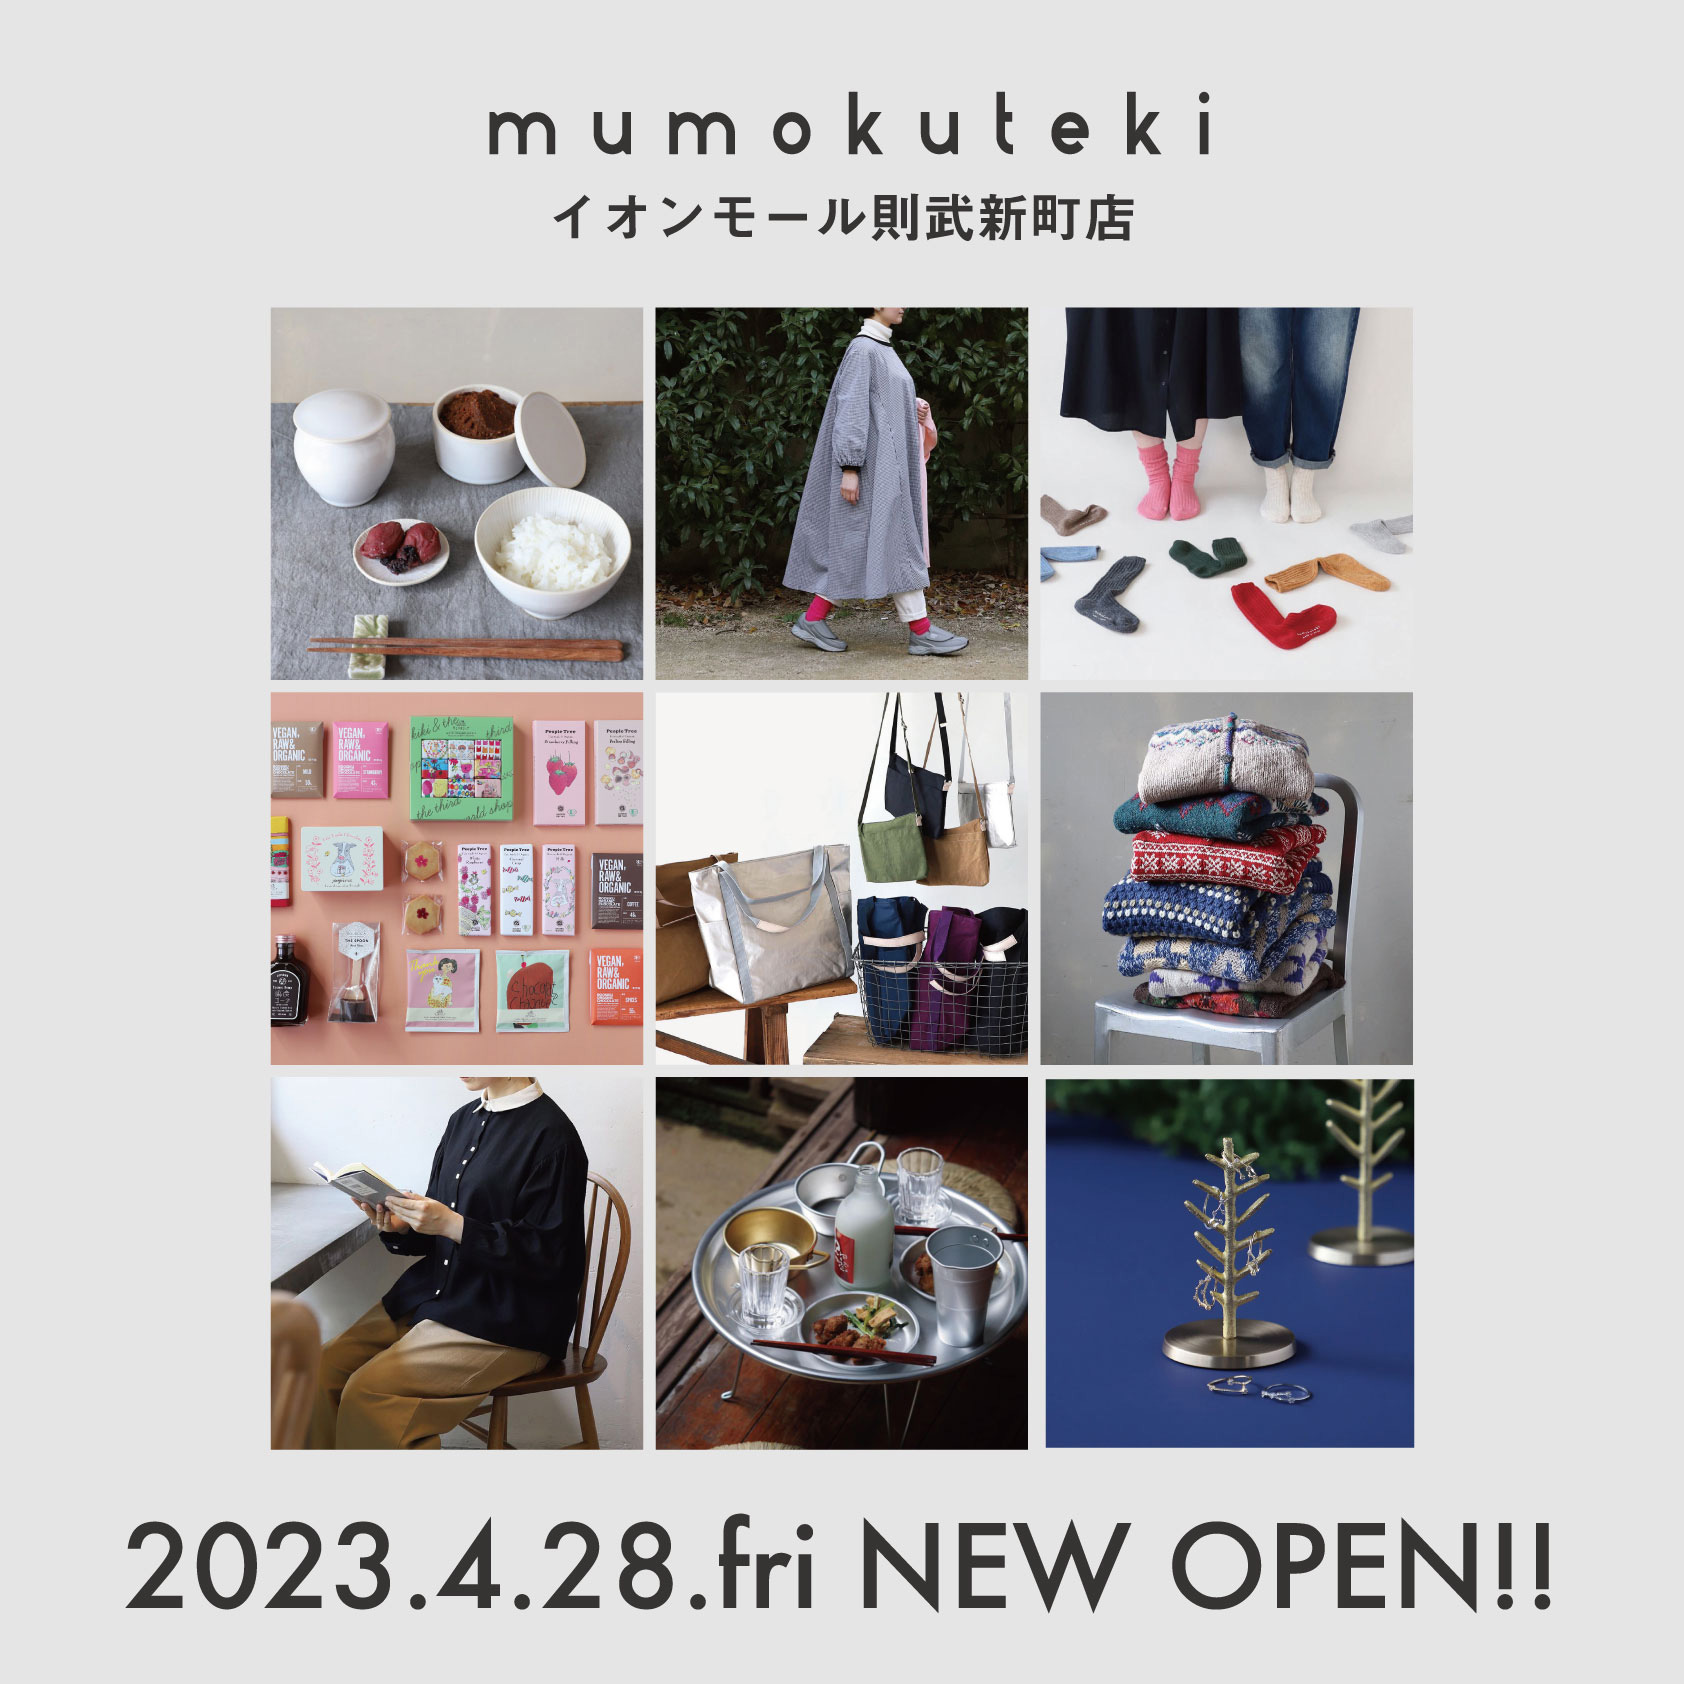 新店舗 NEW OPEN mumokuteki 則武新町店